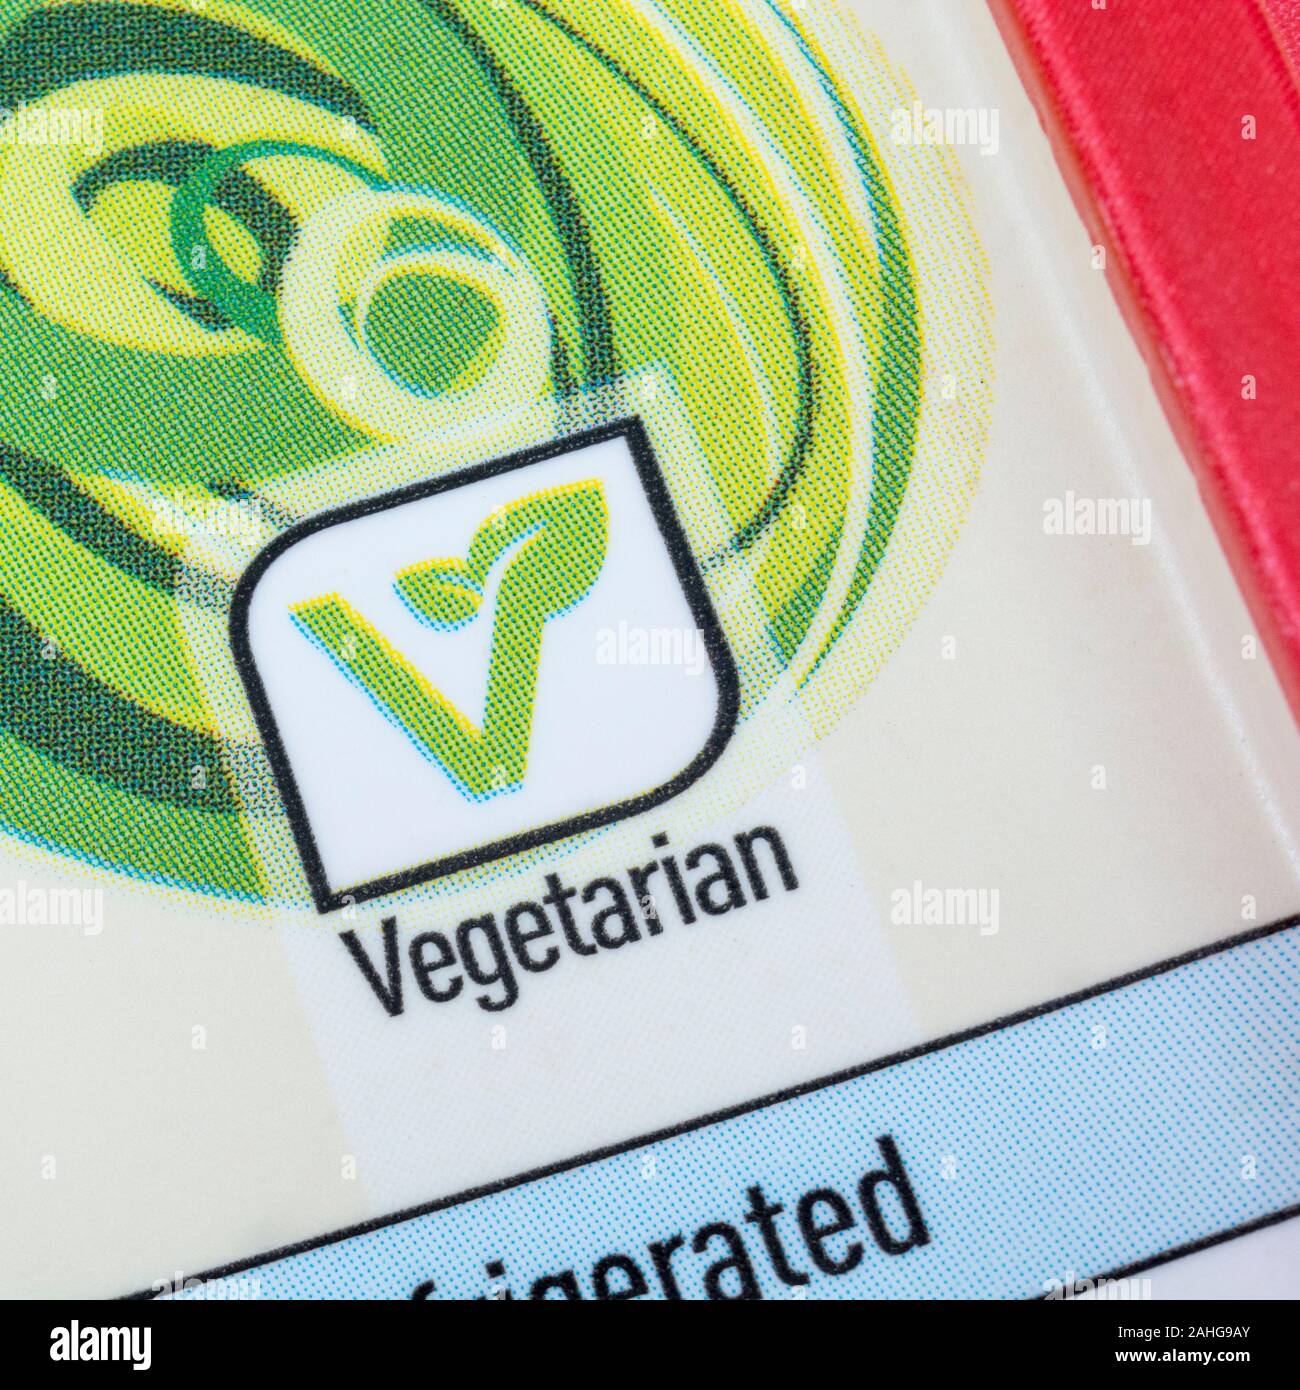 Primo piano etichetta alimentare ASDA Logo vegetariano / Veggie V Sign. Etichetta del cibo primo piano, nutrizione alimentare, alimenti dietetici fatti etichetta, informazioni nutrizionali. Foto Stock